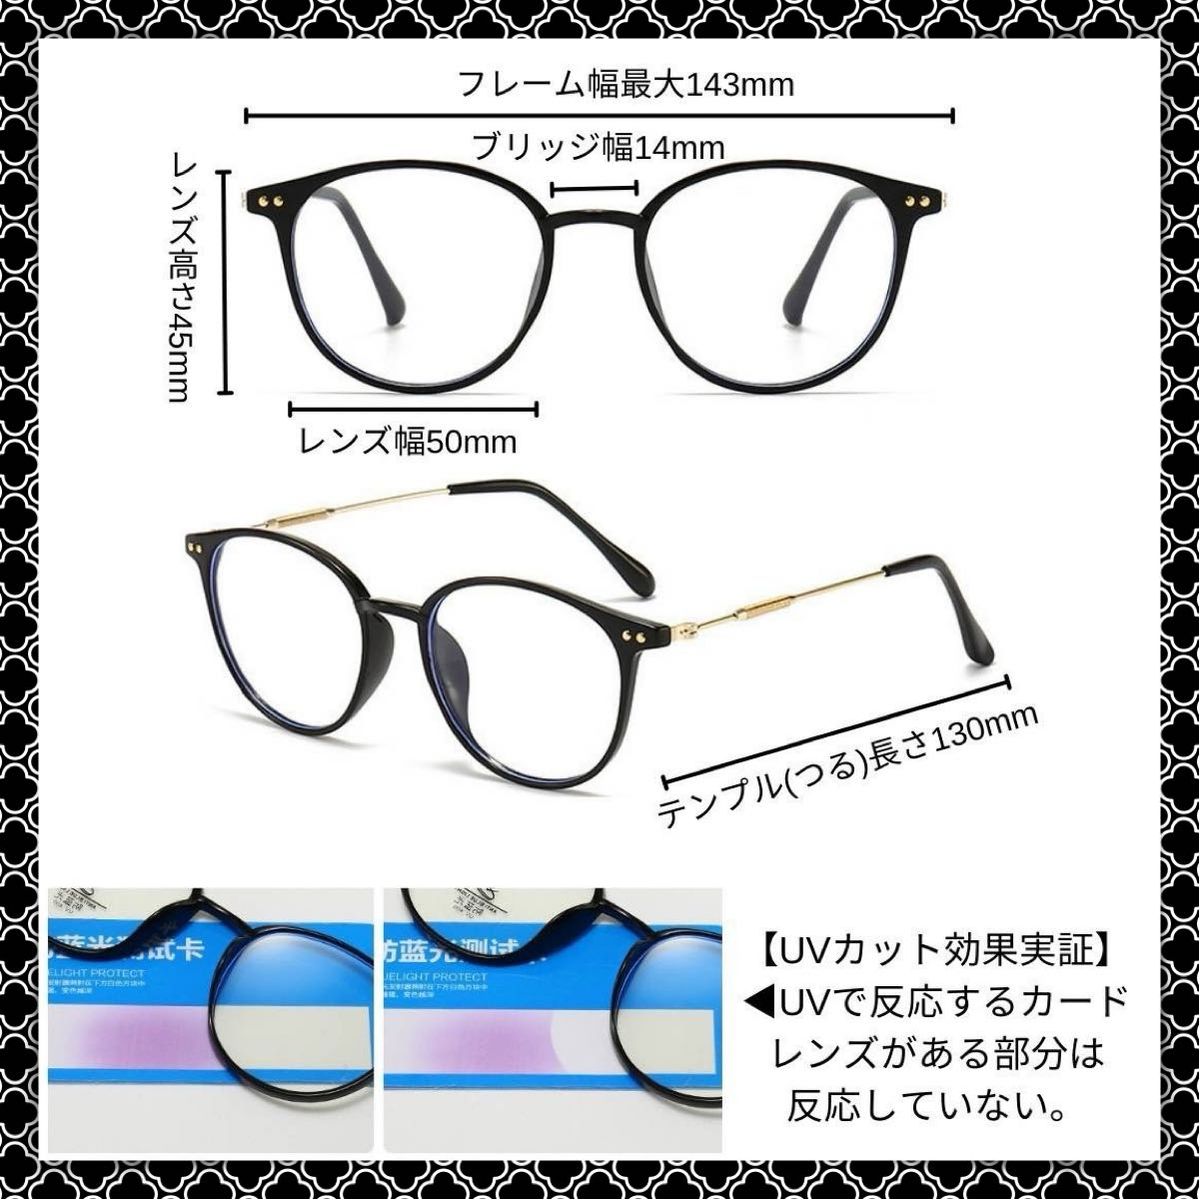 おしゃれ老眼鏡 シニアレンズ -2.0 ブラック ブルーライトカット UVカット シニアグラス メガネ